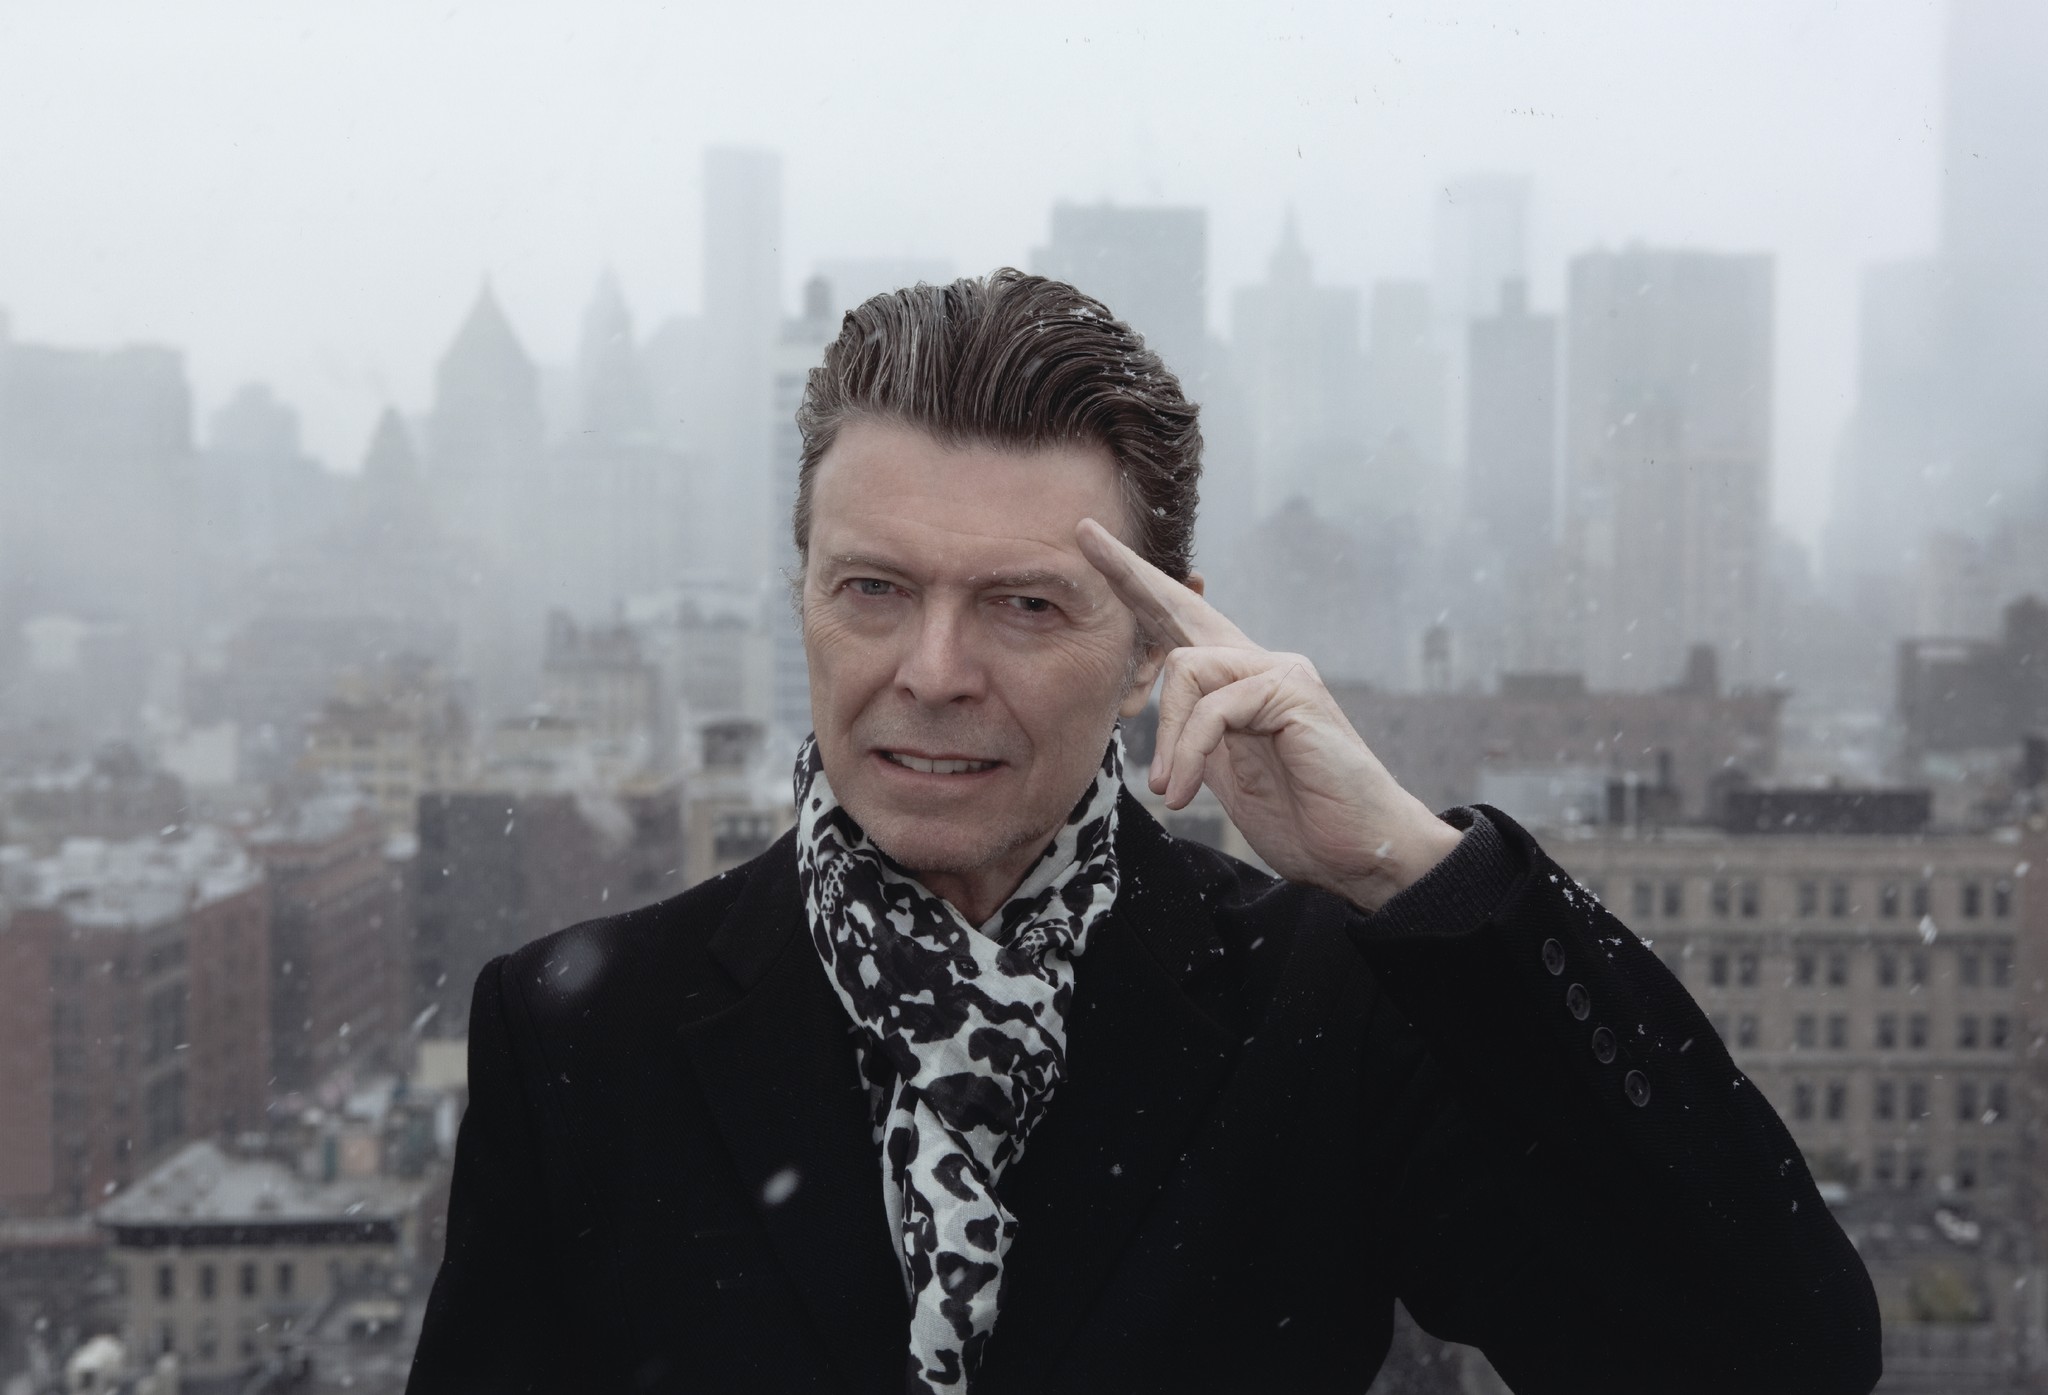 Τα τελευταία 5 χρόνια του David Bowie στην ΕΡΤ2